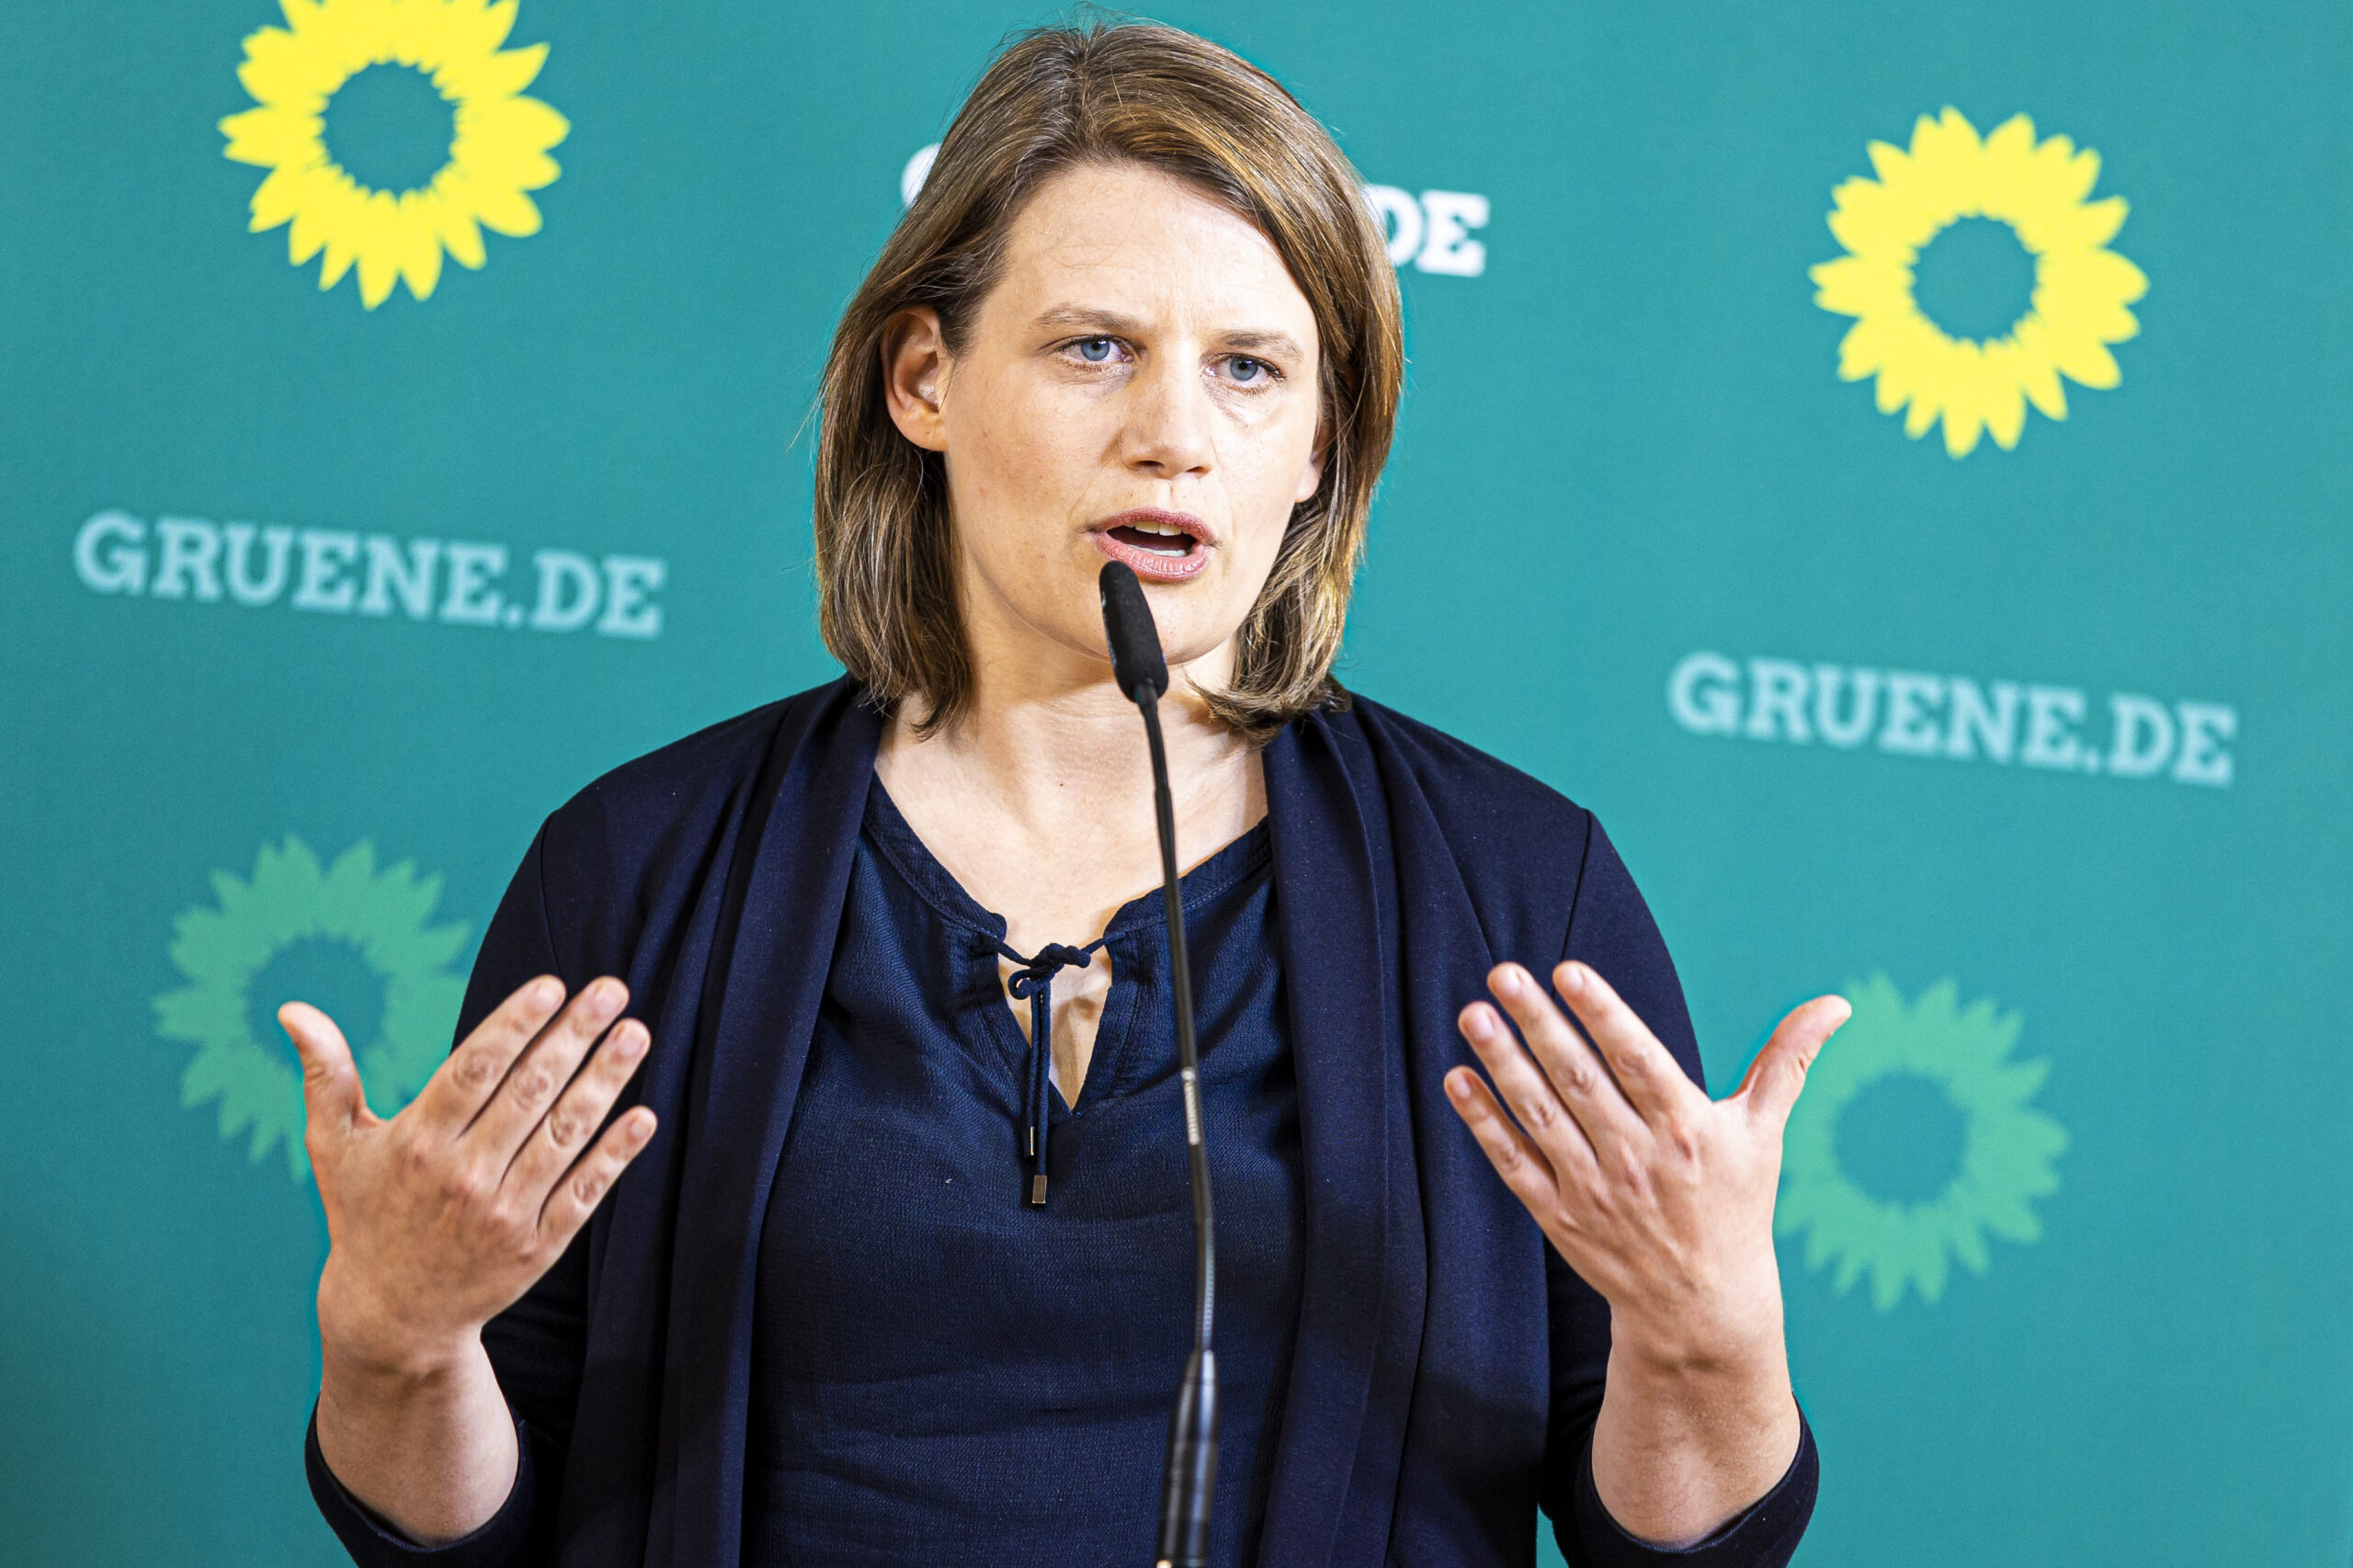 Julia Willie Hamburg, Spitzenkandidatin von Bündnis 90/Die Grünen für die Landtagswahl in Niedersachsen, spricht auf einer Pressekonferenz